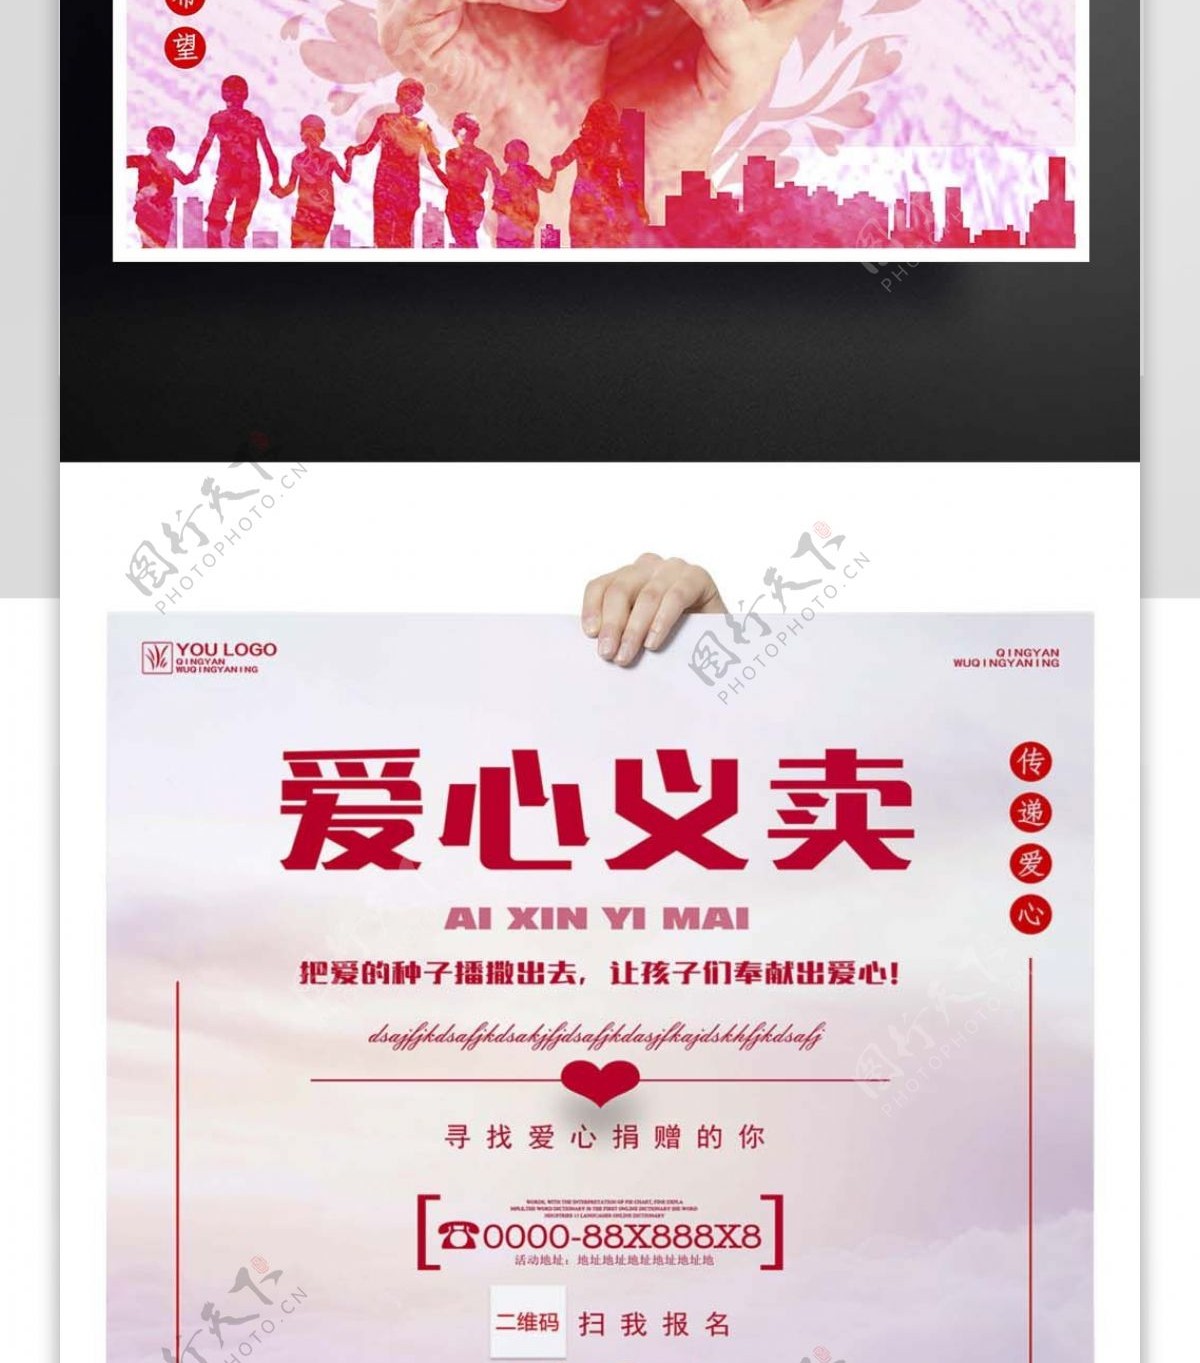 2017年粉色公益爱心义卖海报设计